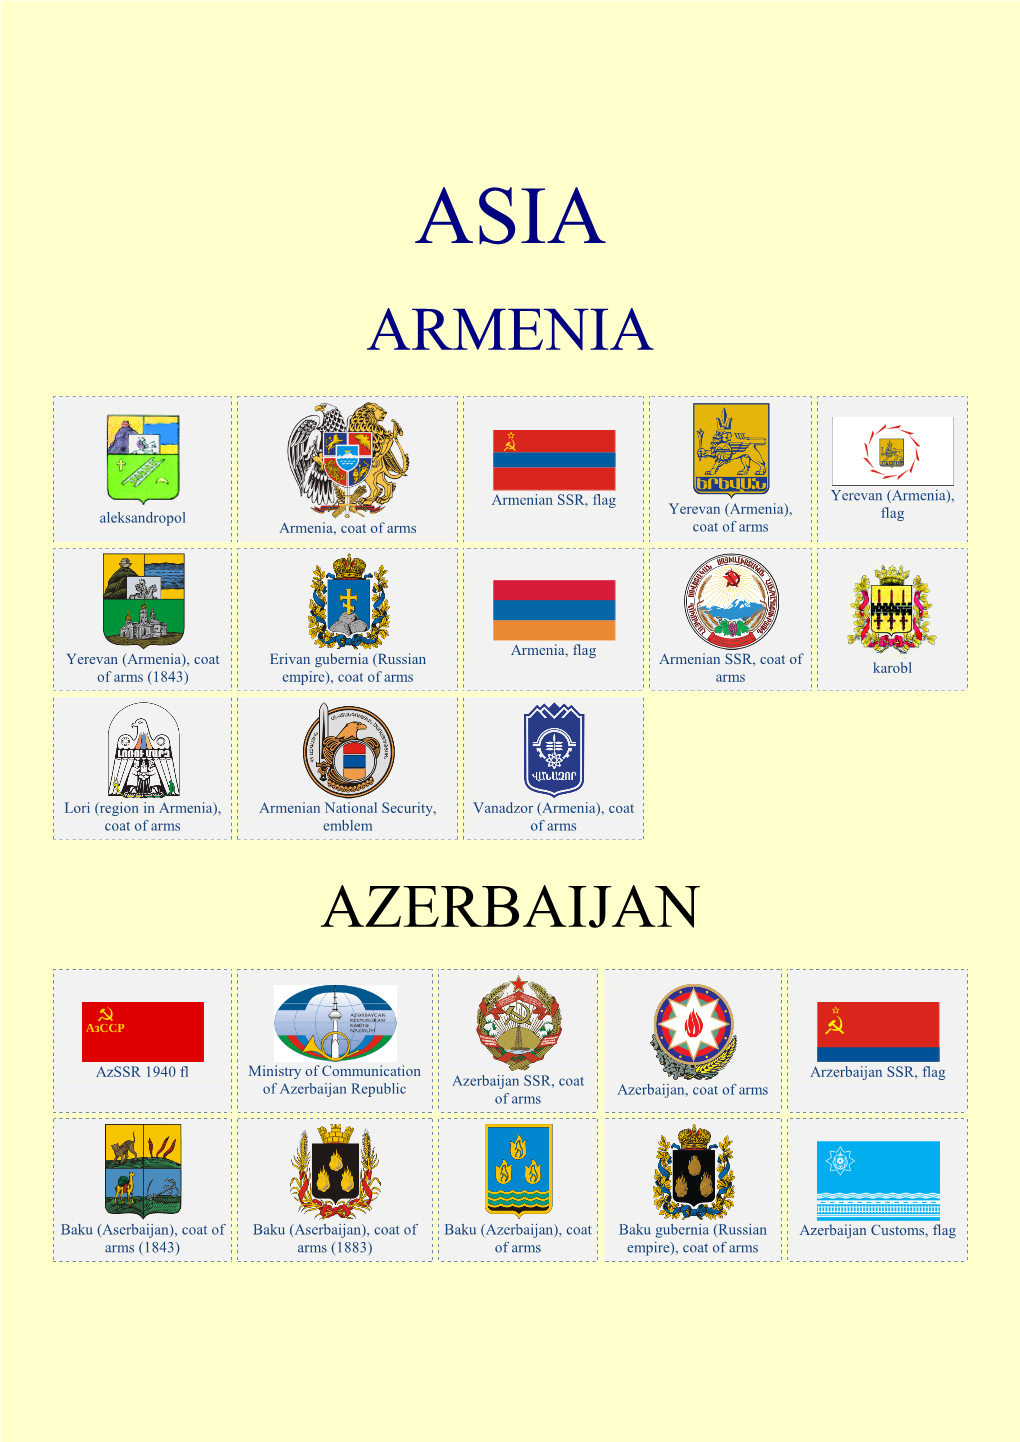 Armenia Azerbaijan